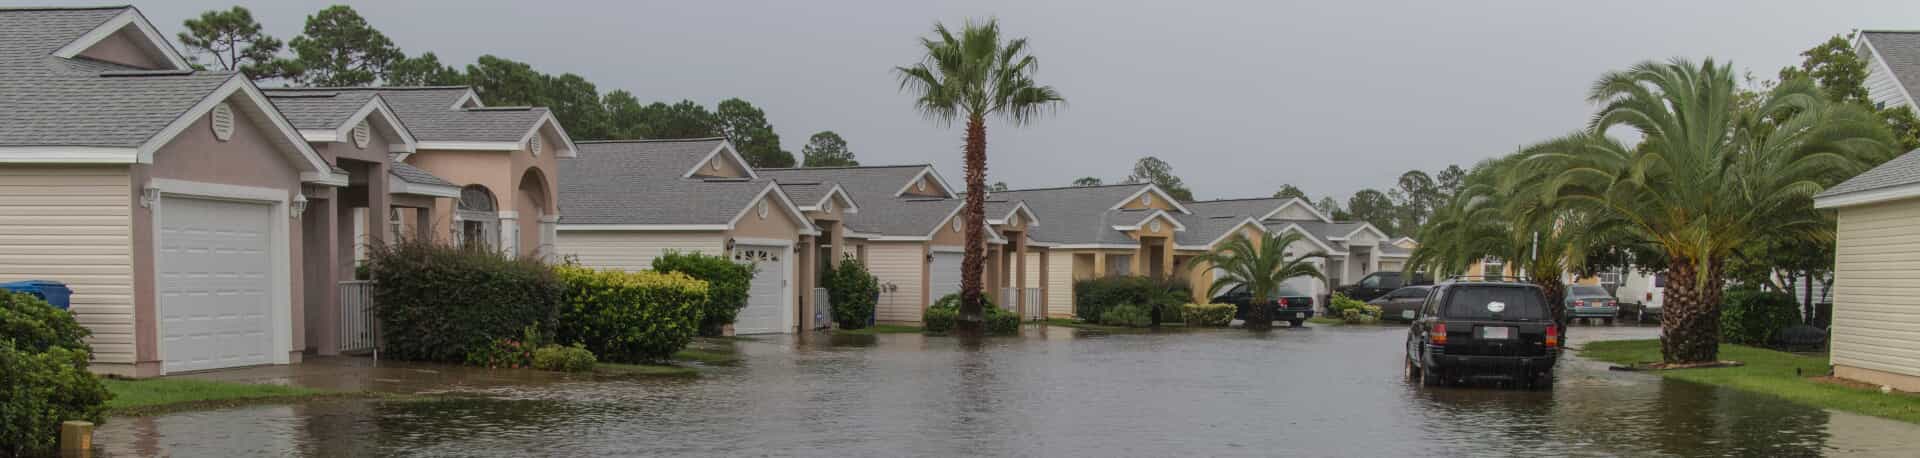 Flooded Florida neighborhood street.